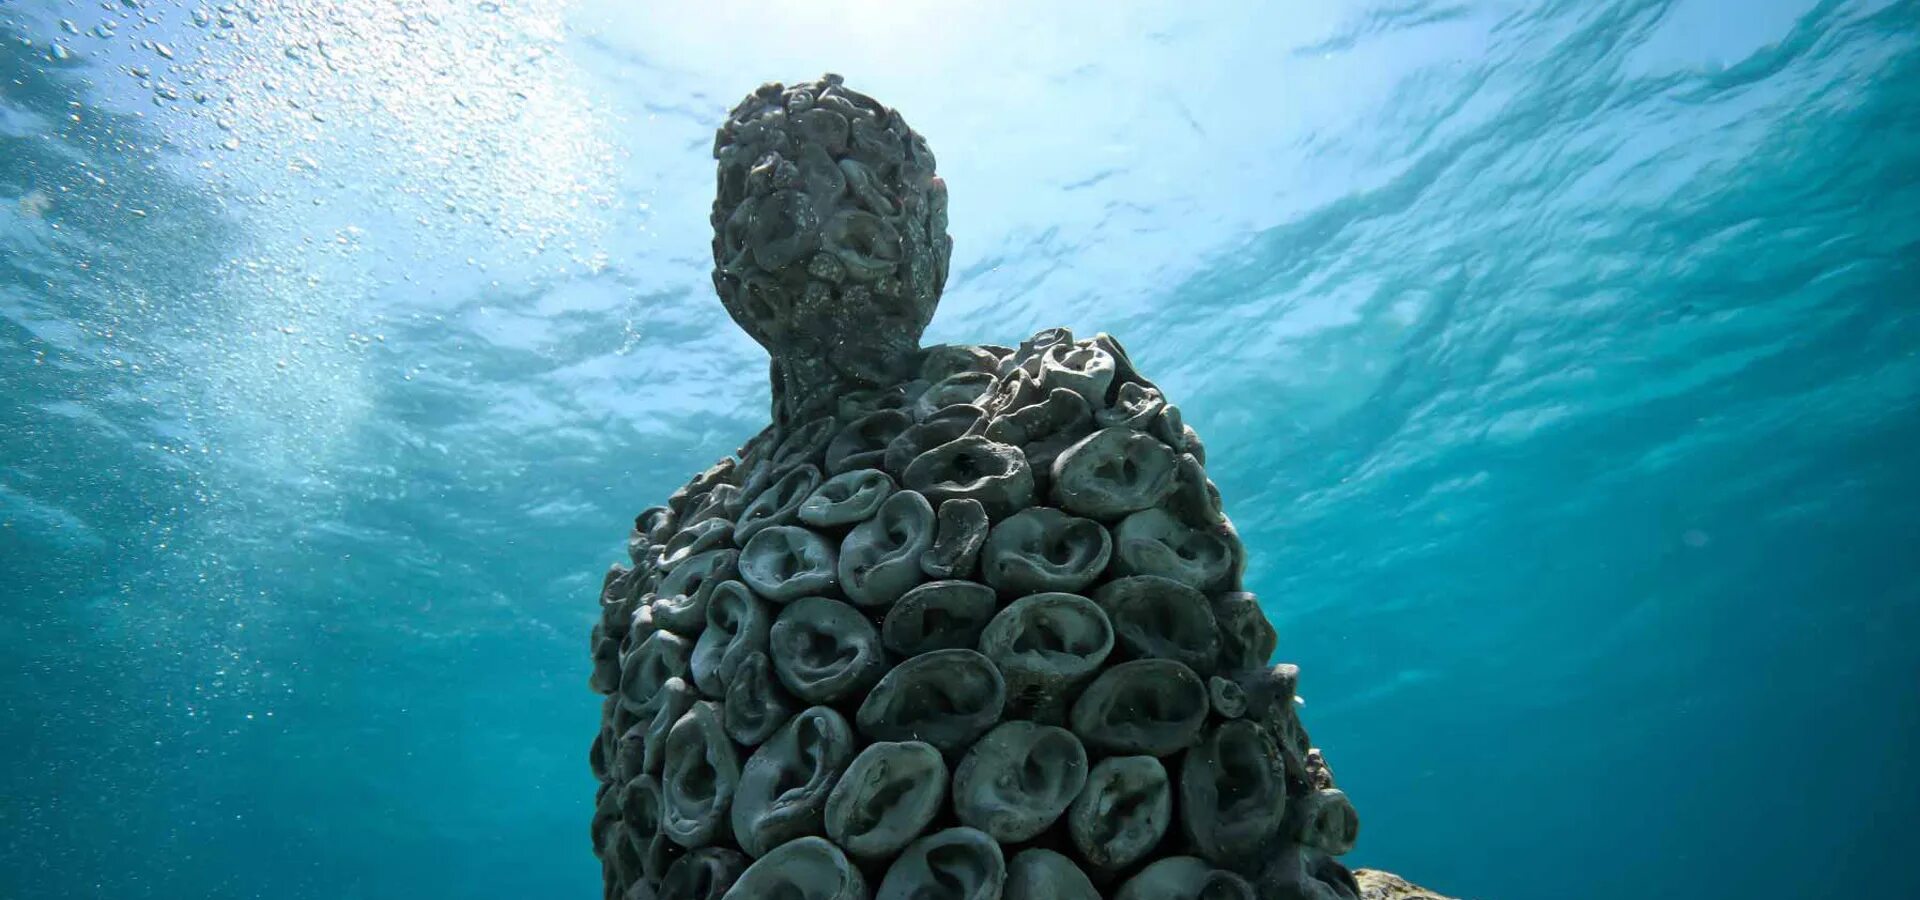 Подводный музей Джейсона де Кайрес Тейлора. Канкун Мексика подводный музей. Музей подводных скульптур Мексика. Джейсон де Кайрес Тейлор скульптуры.